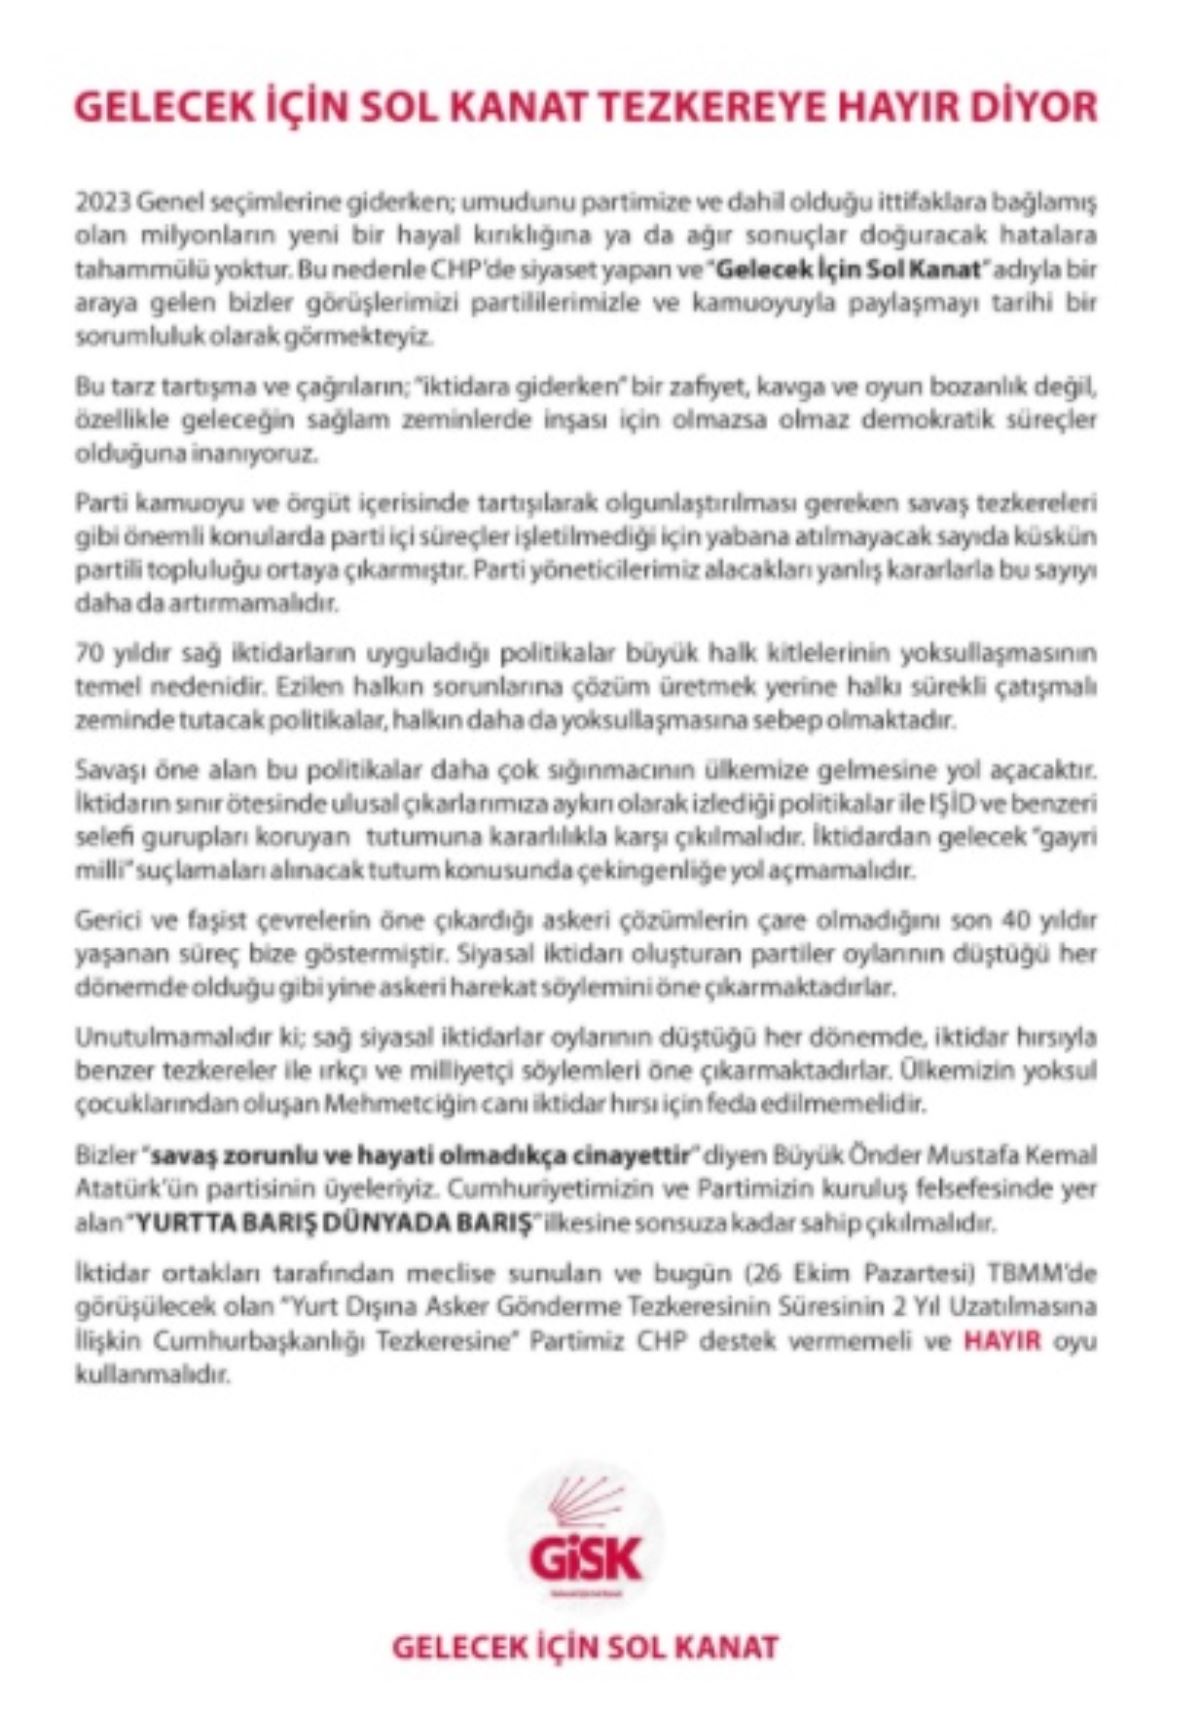 Tezkereye 'Hayır' diyeceğini açıklayan CHP milletvekili partisine davet yaptı: Dayanak olunmamalı